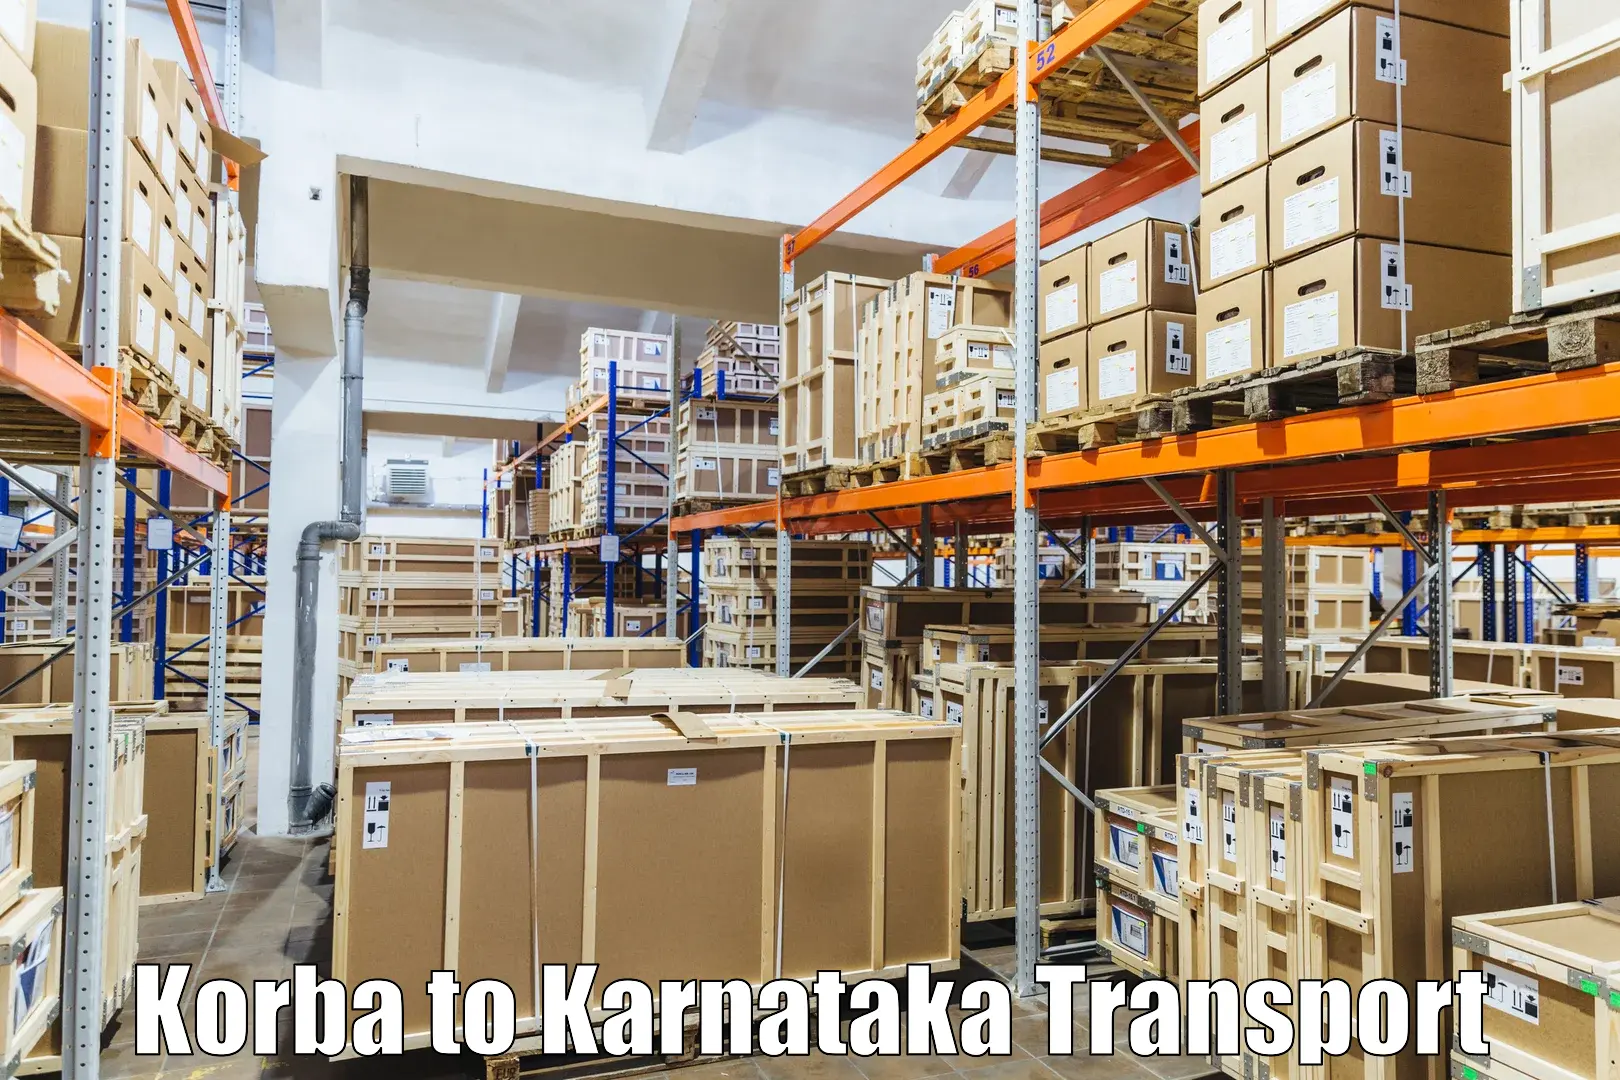 Transportation solution services Korba to Gurmatkal